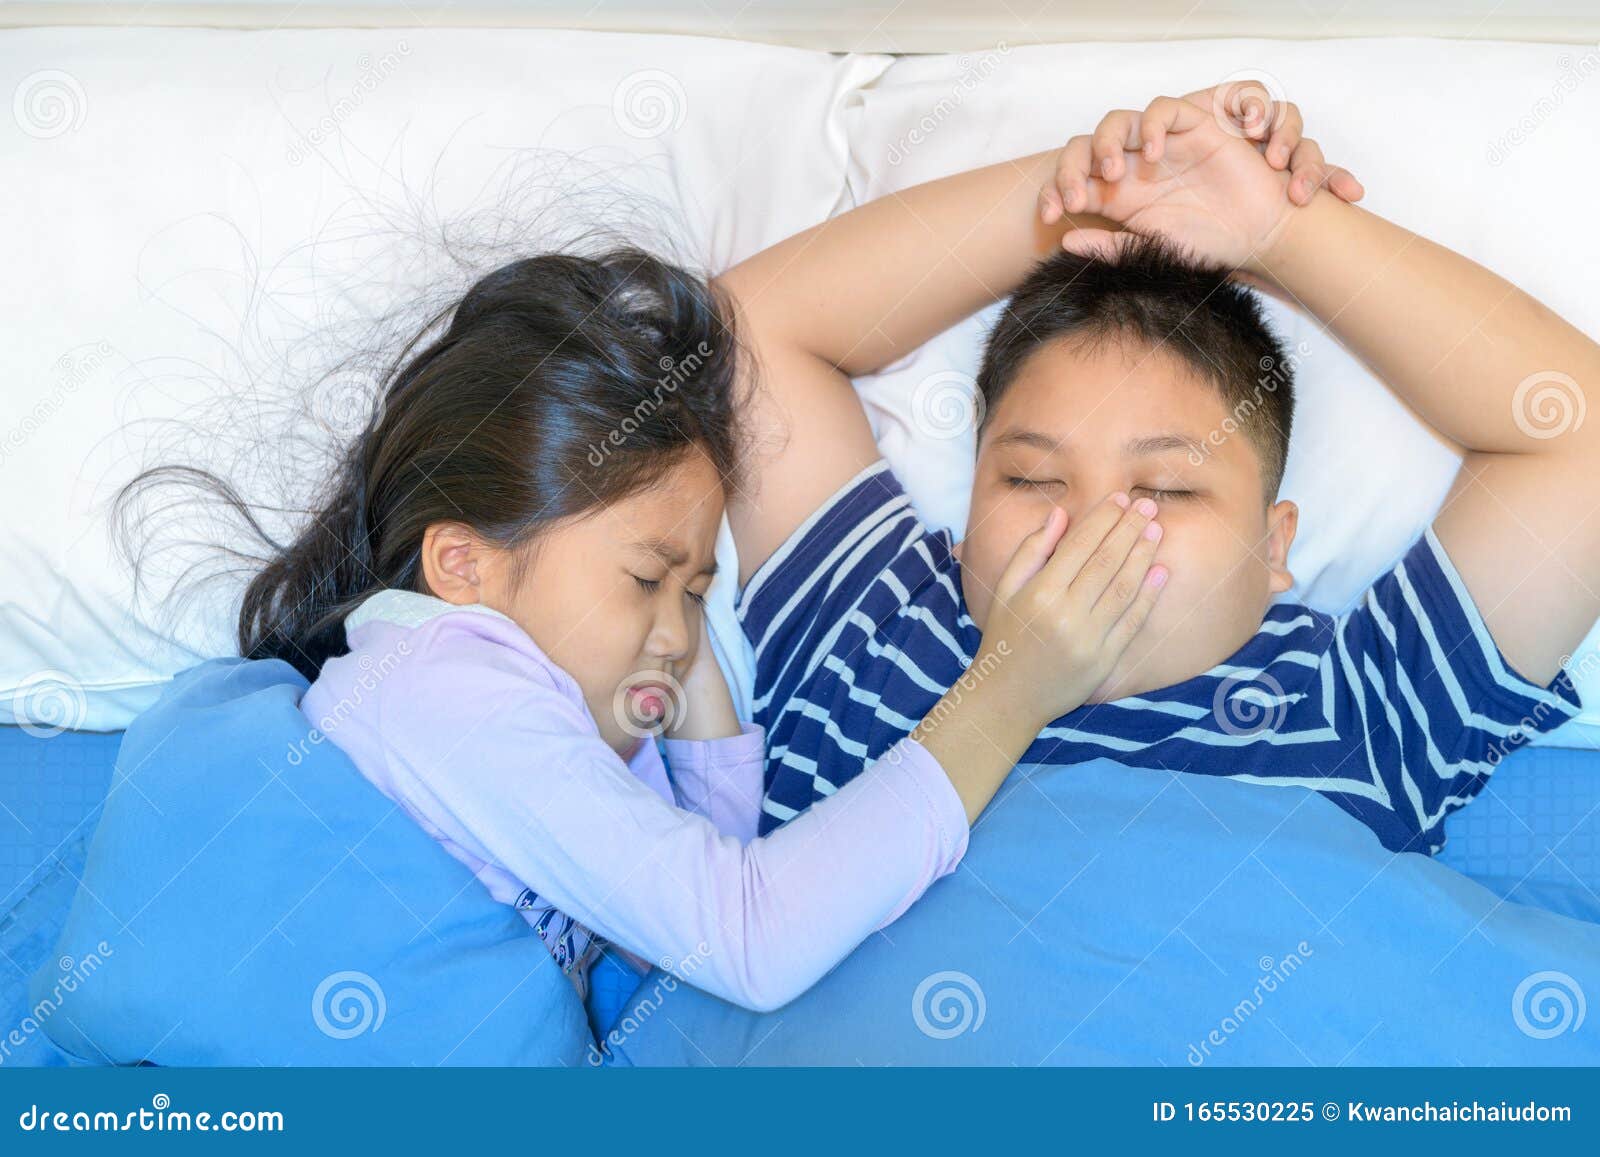 Видит спящую сестру. Сестра храпит. Храп картинка для детей. Братья храп.